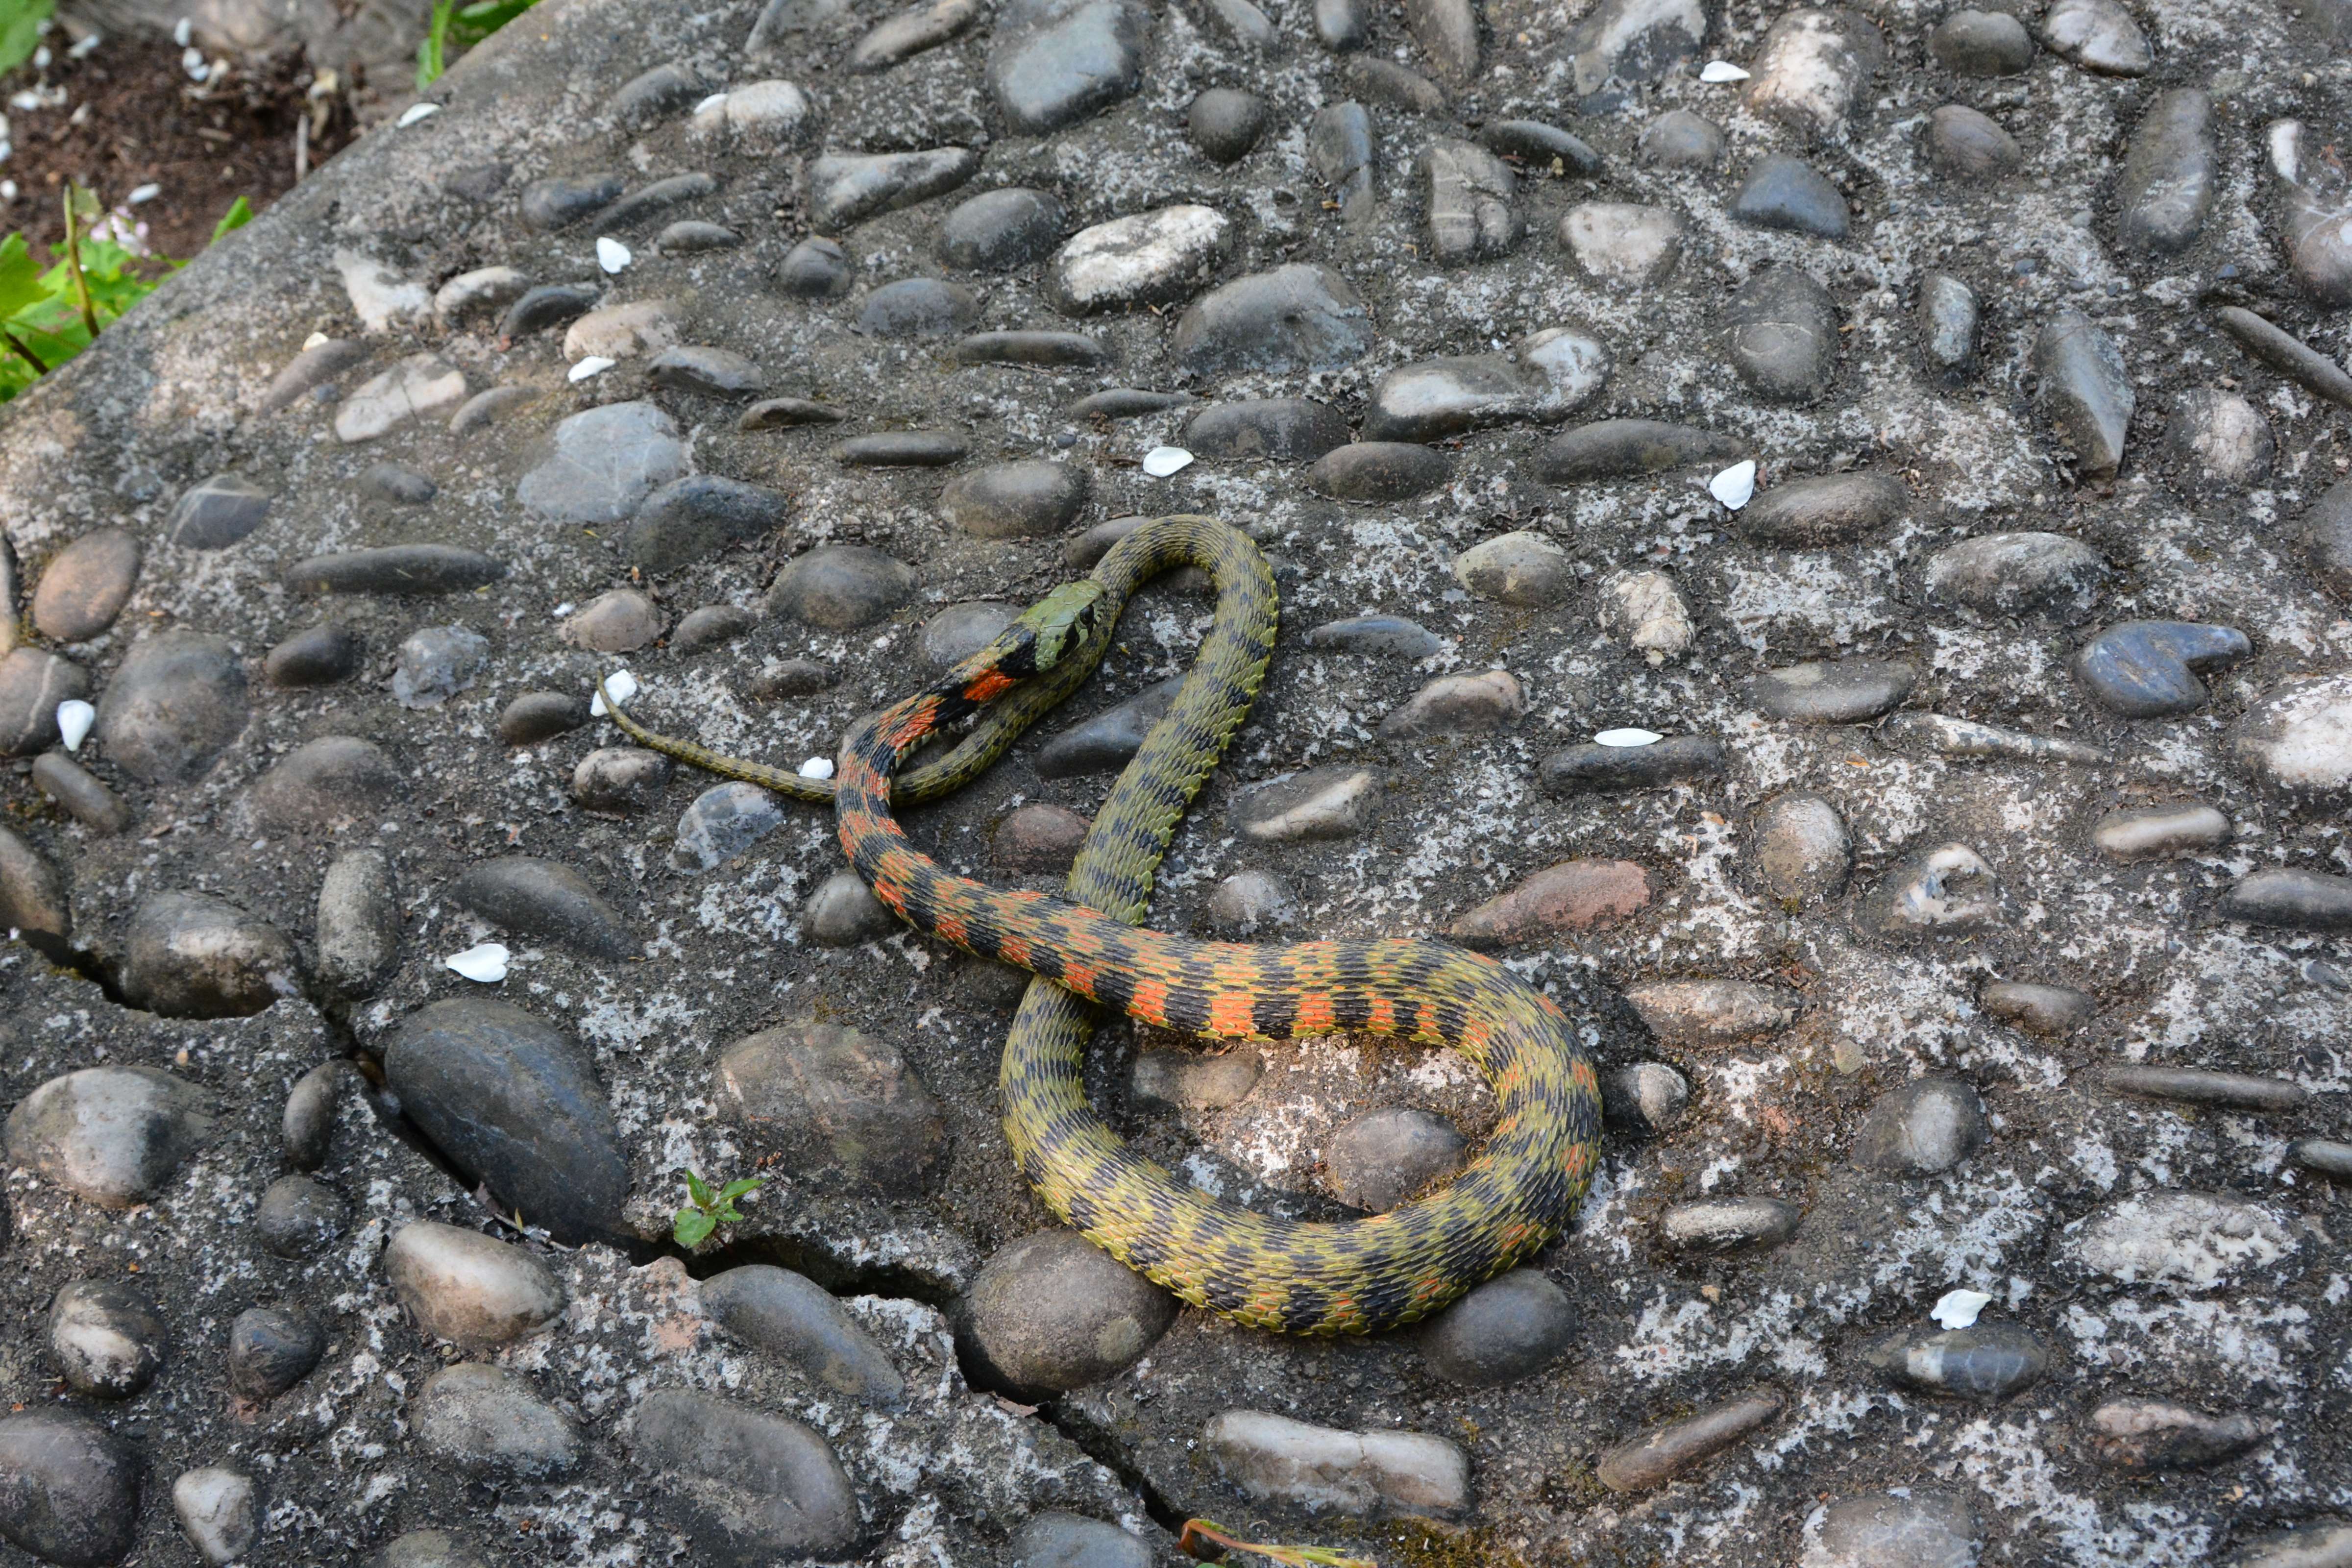 戴帽子的小蛇 的想法: 今天在公园偶遇的小可爱 虎斑颈槽蛇,俗